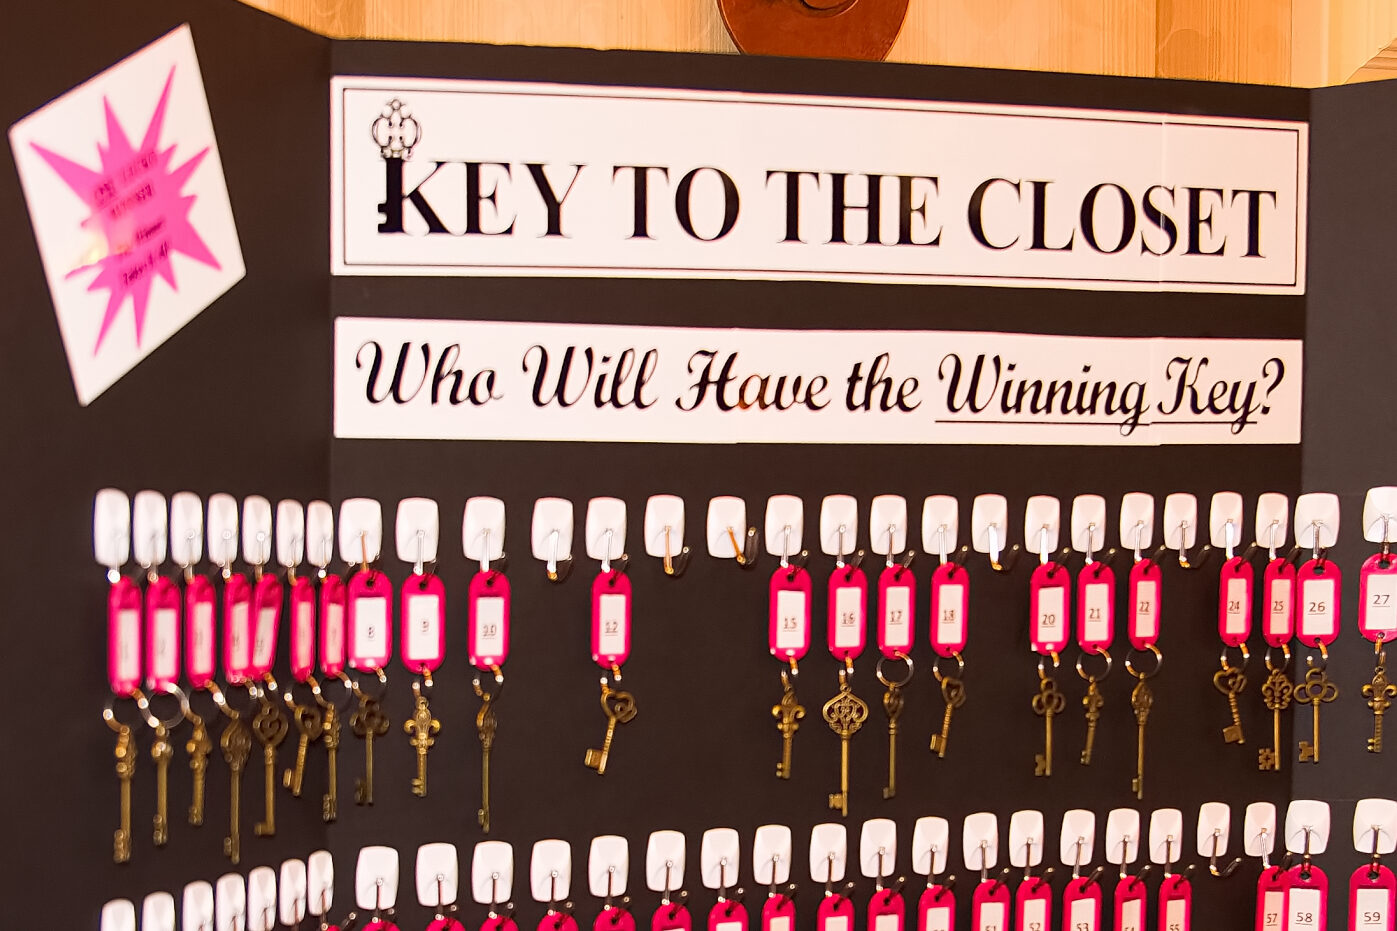 Key to the Closet